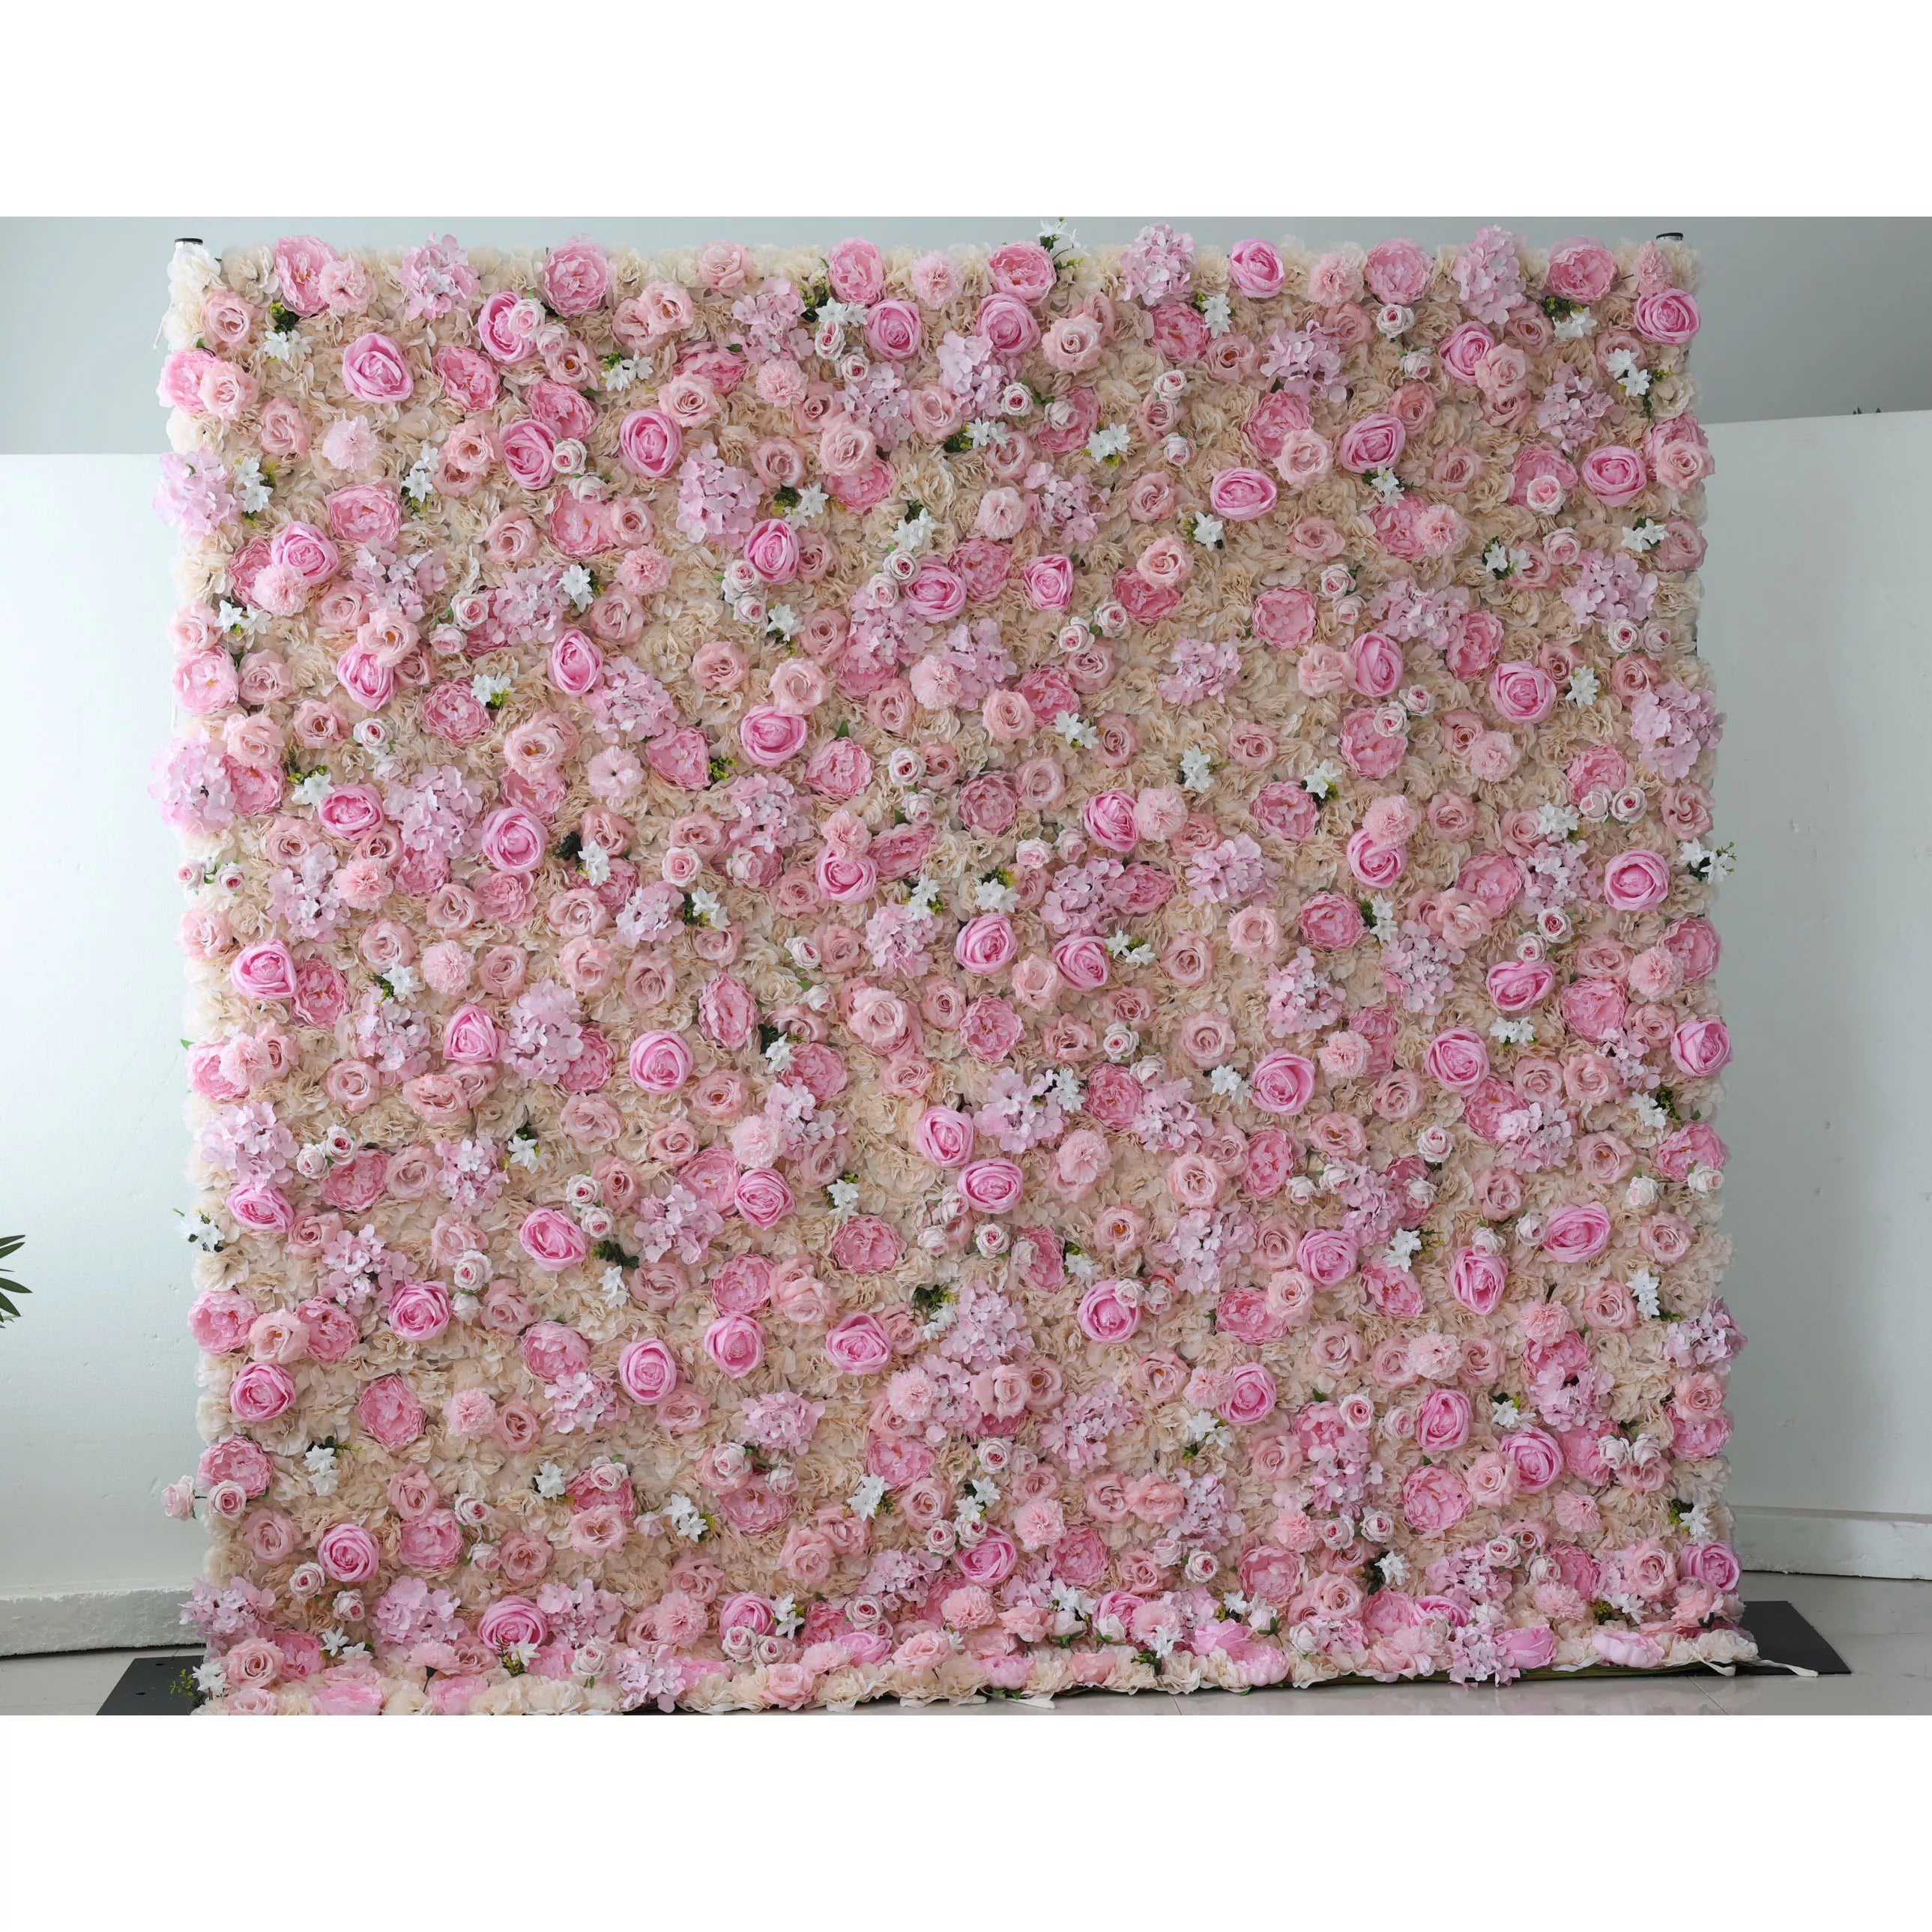 خلفية جدار زهور اصطناعية من Valarar: خلفية جدار أزهار نعيم زهور صناعية: وردة وردية ساحره